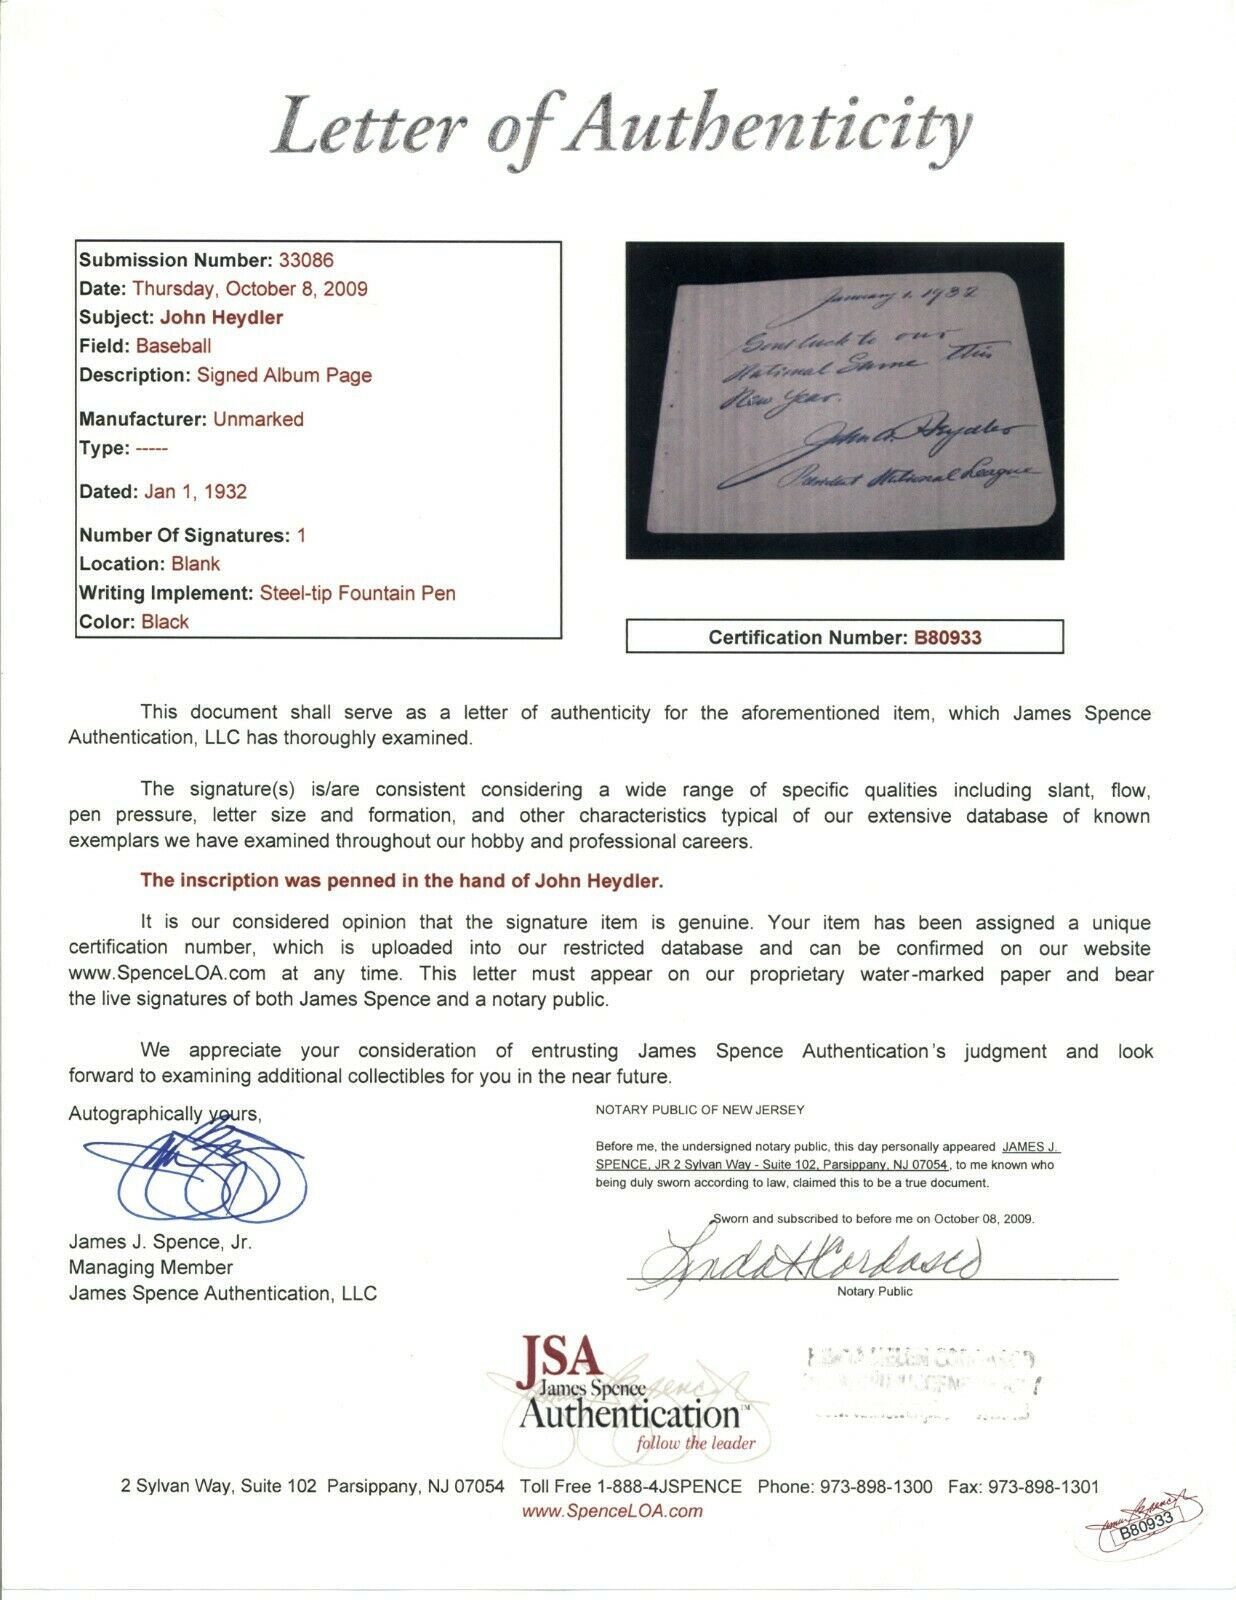 JOHN HEYDLER President NL Baseball Signed Letter Autograph Handwritten JSA LOA